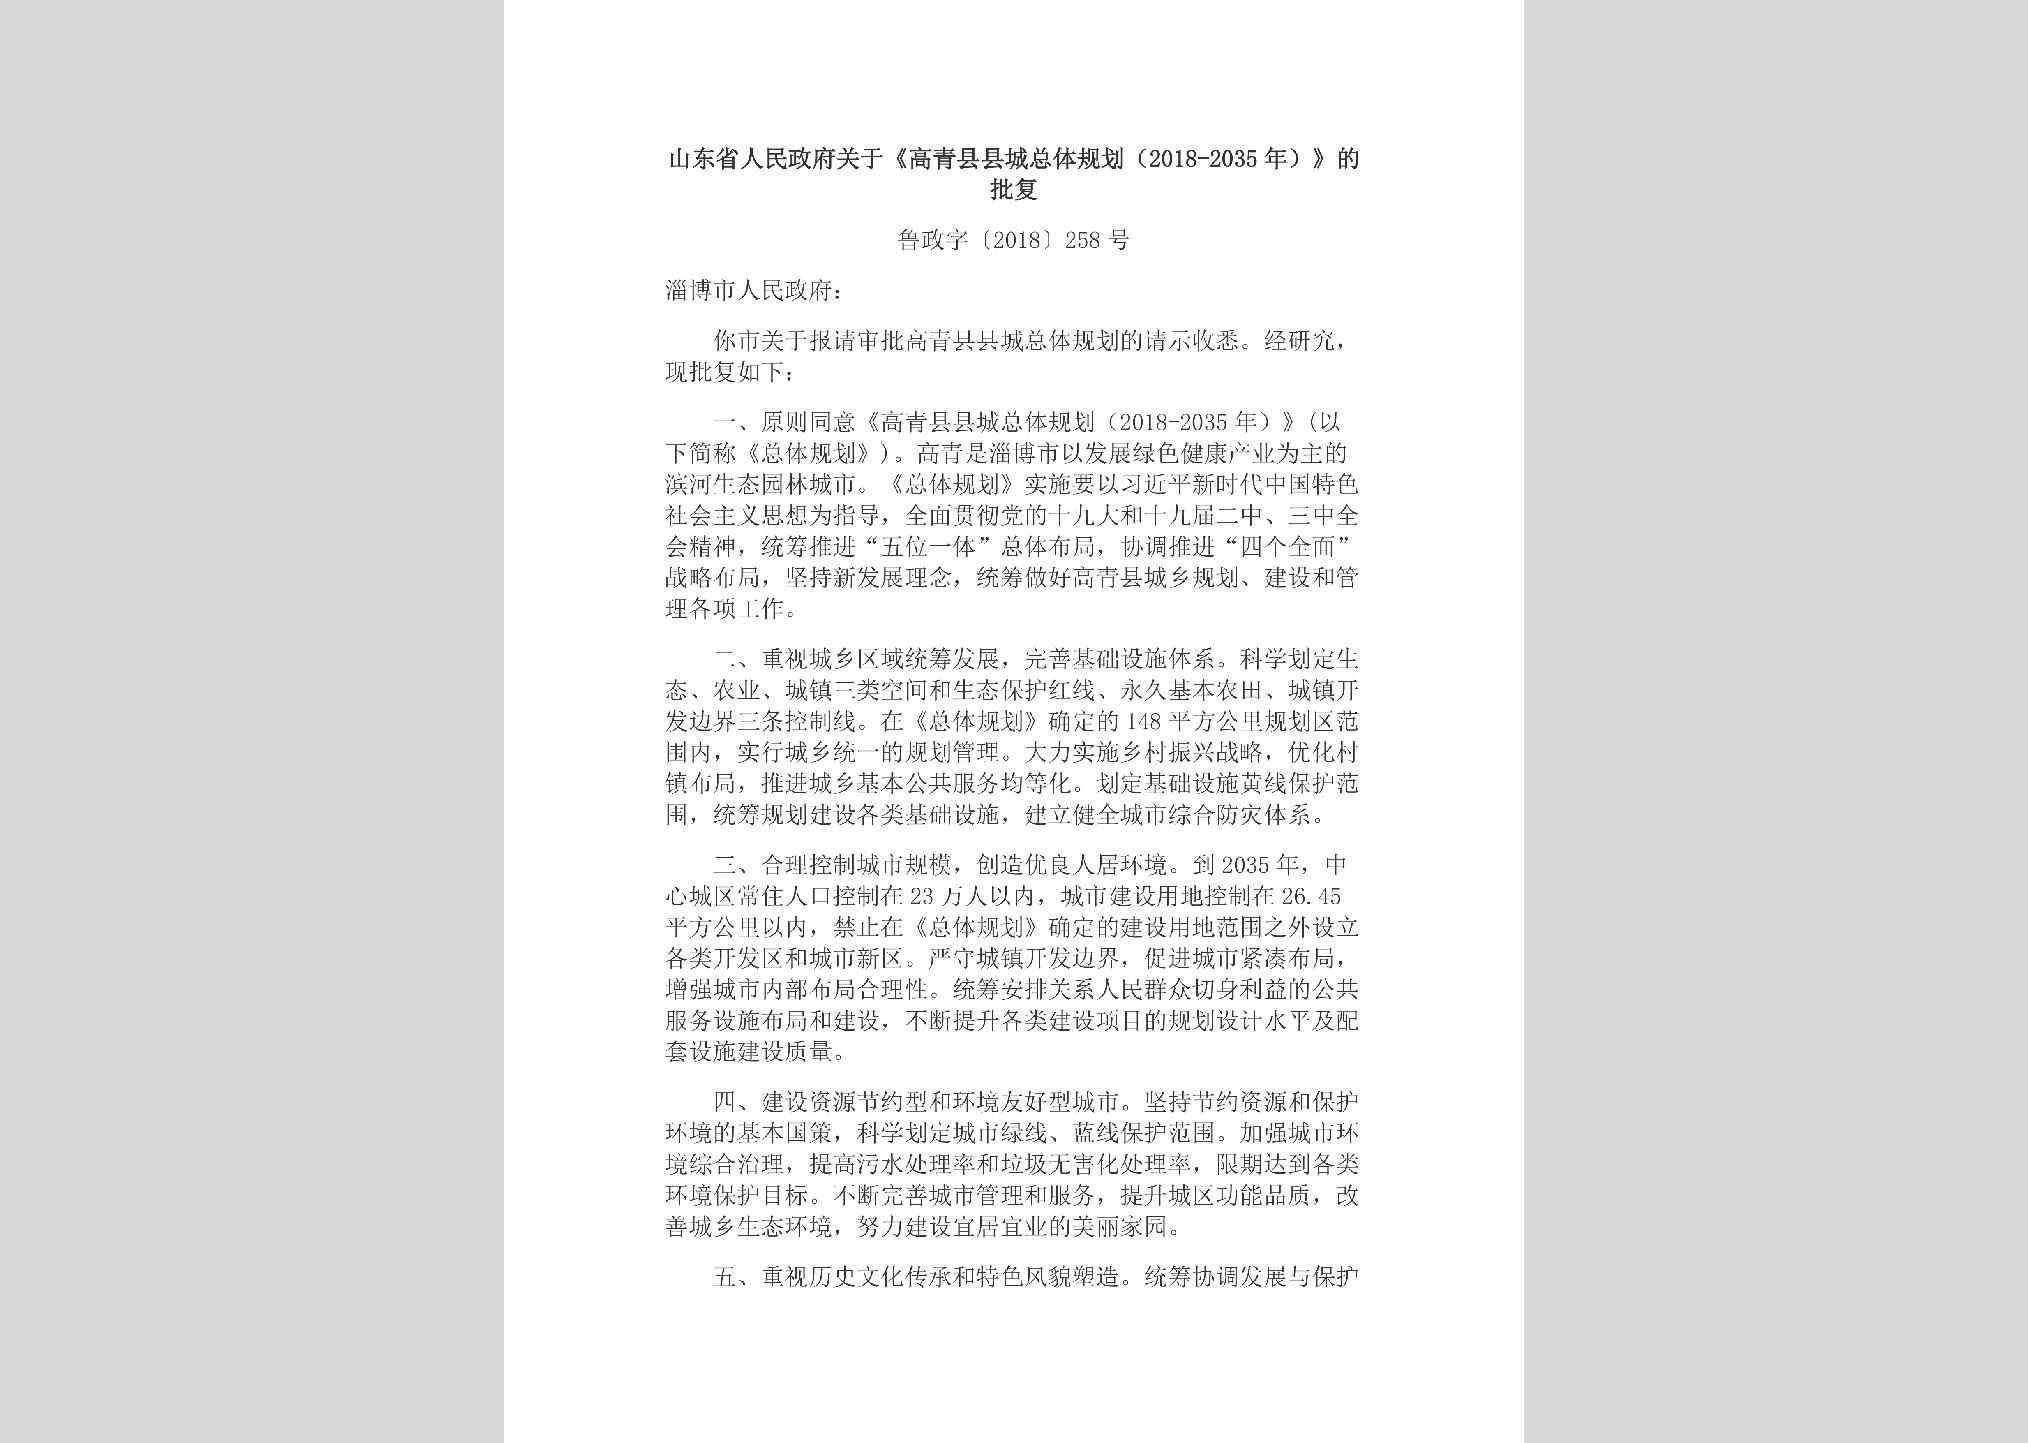 鲁政字[2018]258号：山东省人民政府关于《高青县县城总体规划（2018-2035年）》的批复